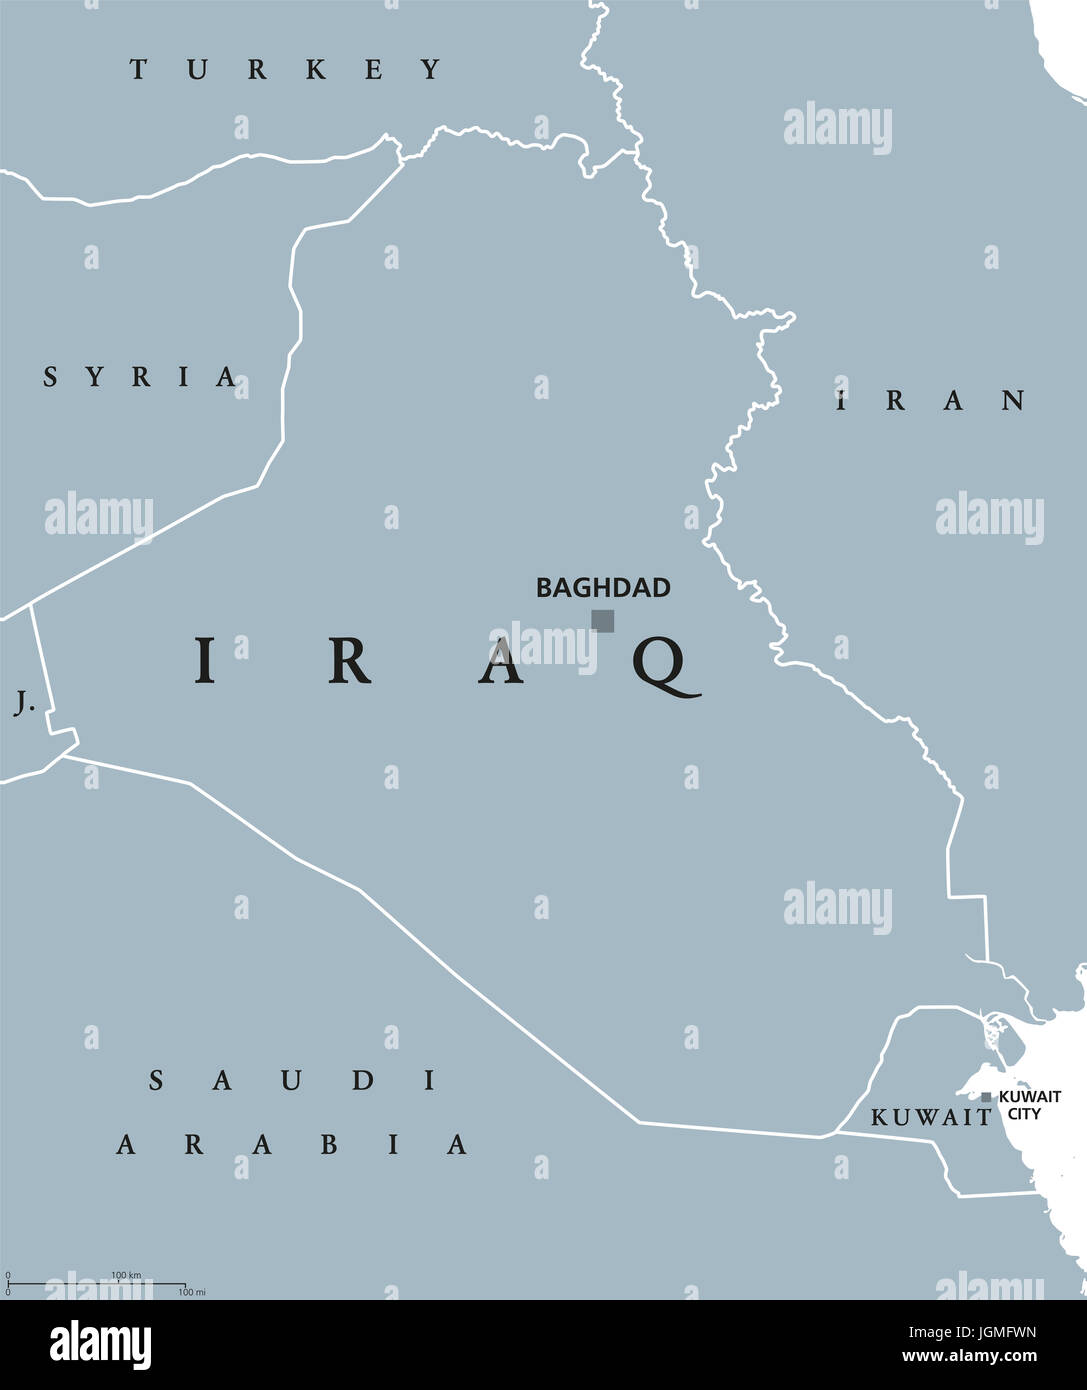 Carte politique de l'Iraq avec capitale Bagdad. République et pays arabe au Moyen-Orient, l'Asie de l'Ouest et sur le golfe Persique. Gris illustration. Banque D'Images